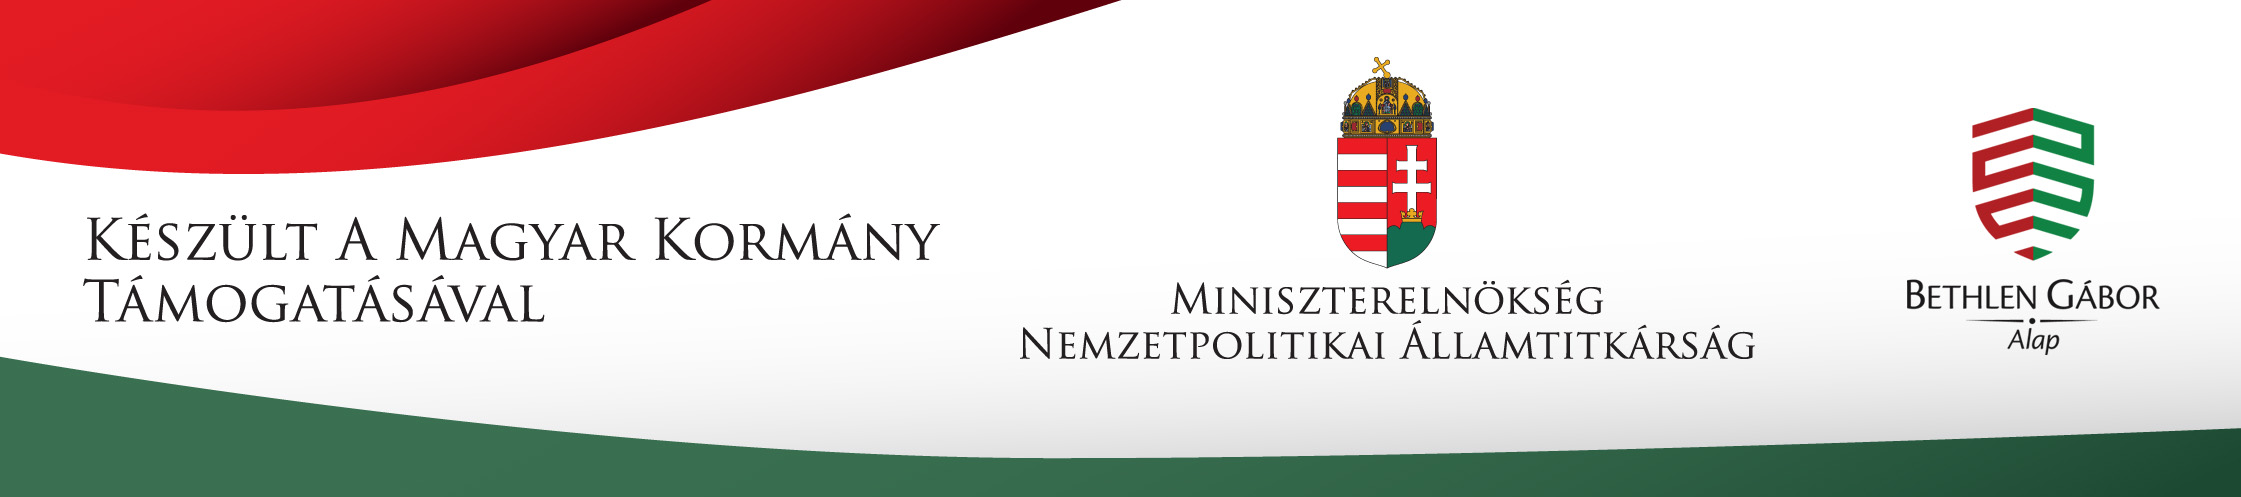 Készült a Magyar Kormány Támogatásával, Miniszterelnökség Nemzetpolitikai Államtitkárság, Bethlen Gábor Alap logó